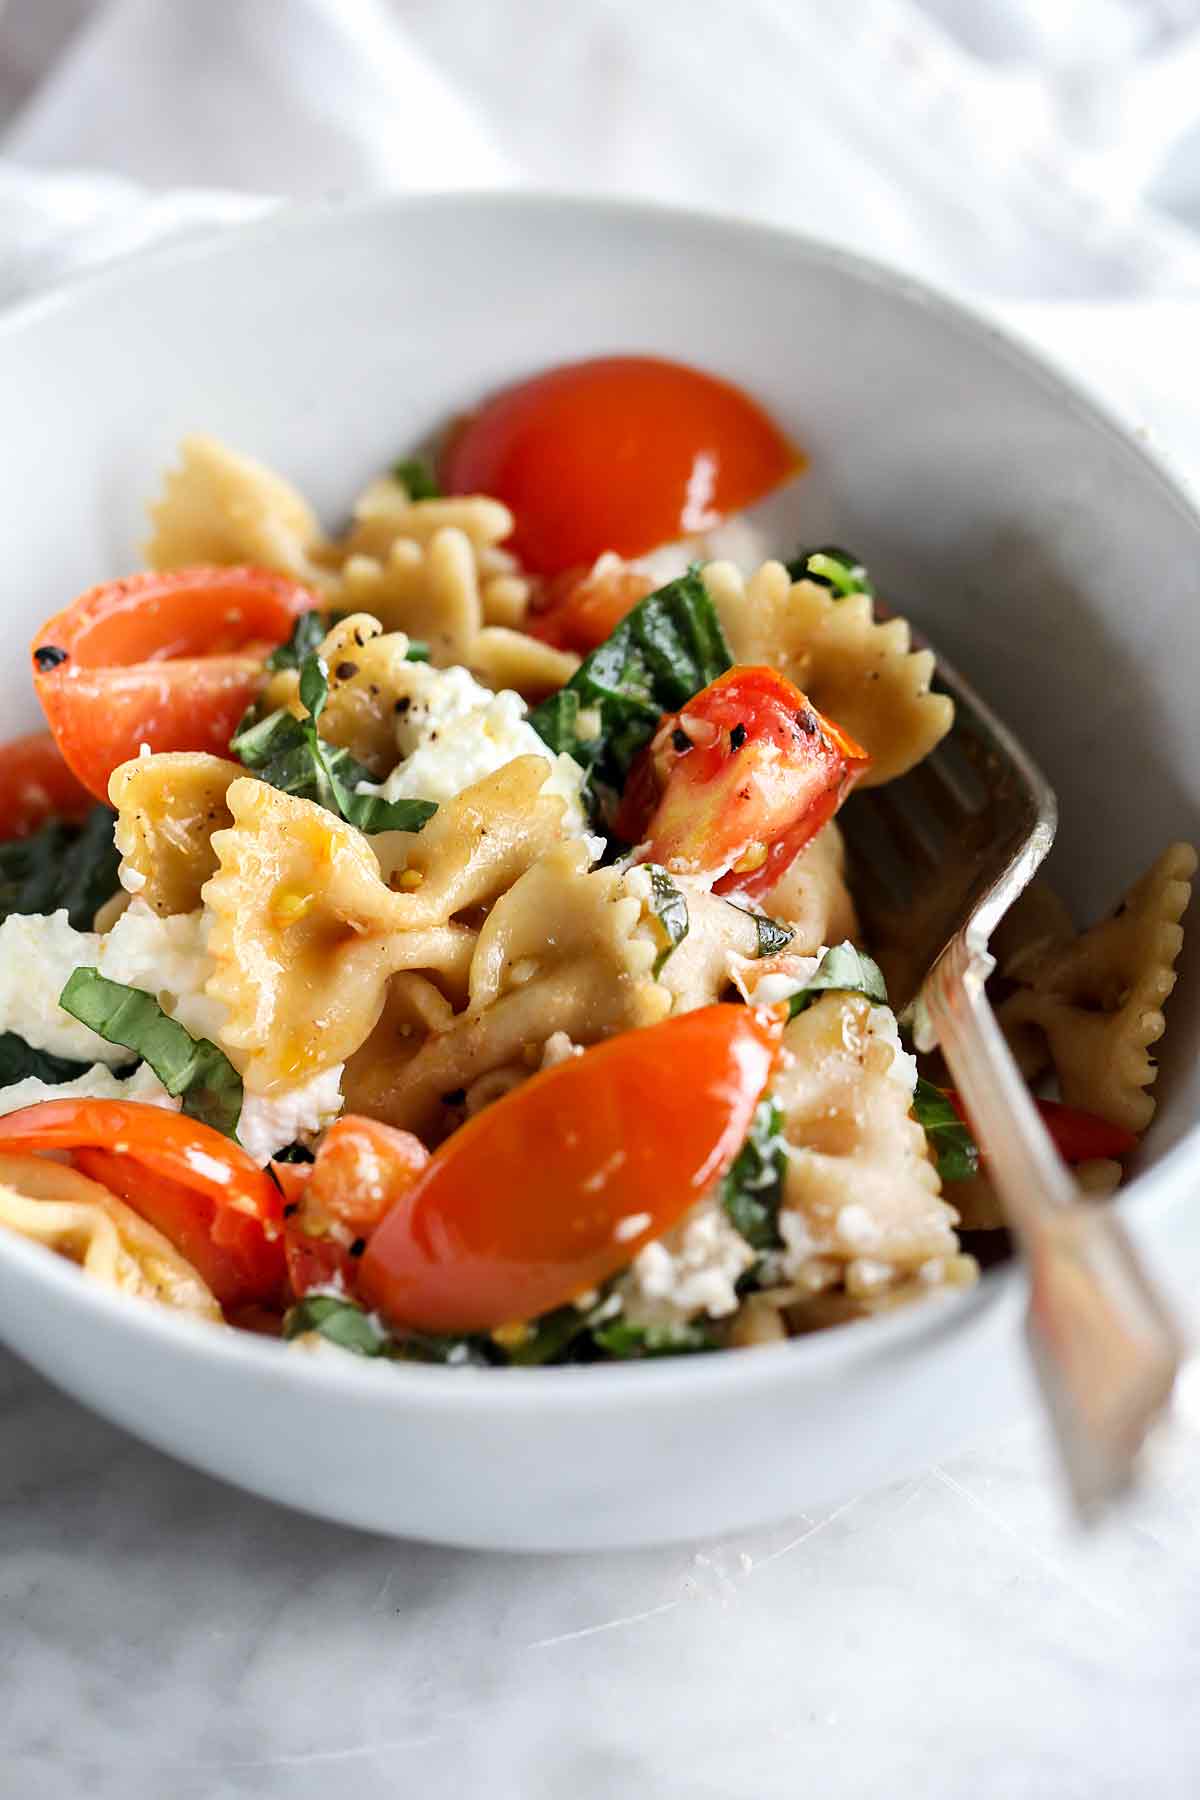 Pâtes aux tomates fraîches et à la ricotta | foodiecrush.com #pasta #farine #recettes #dîner #santé #tomates #ricotta